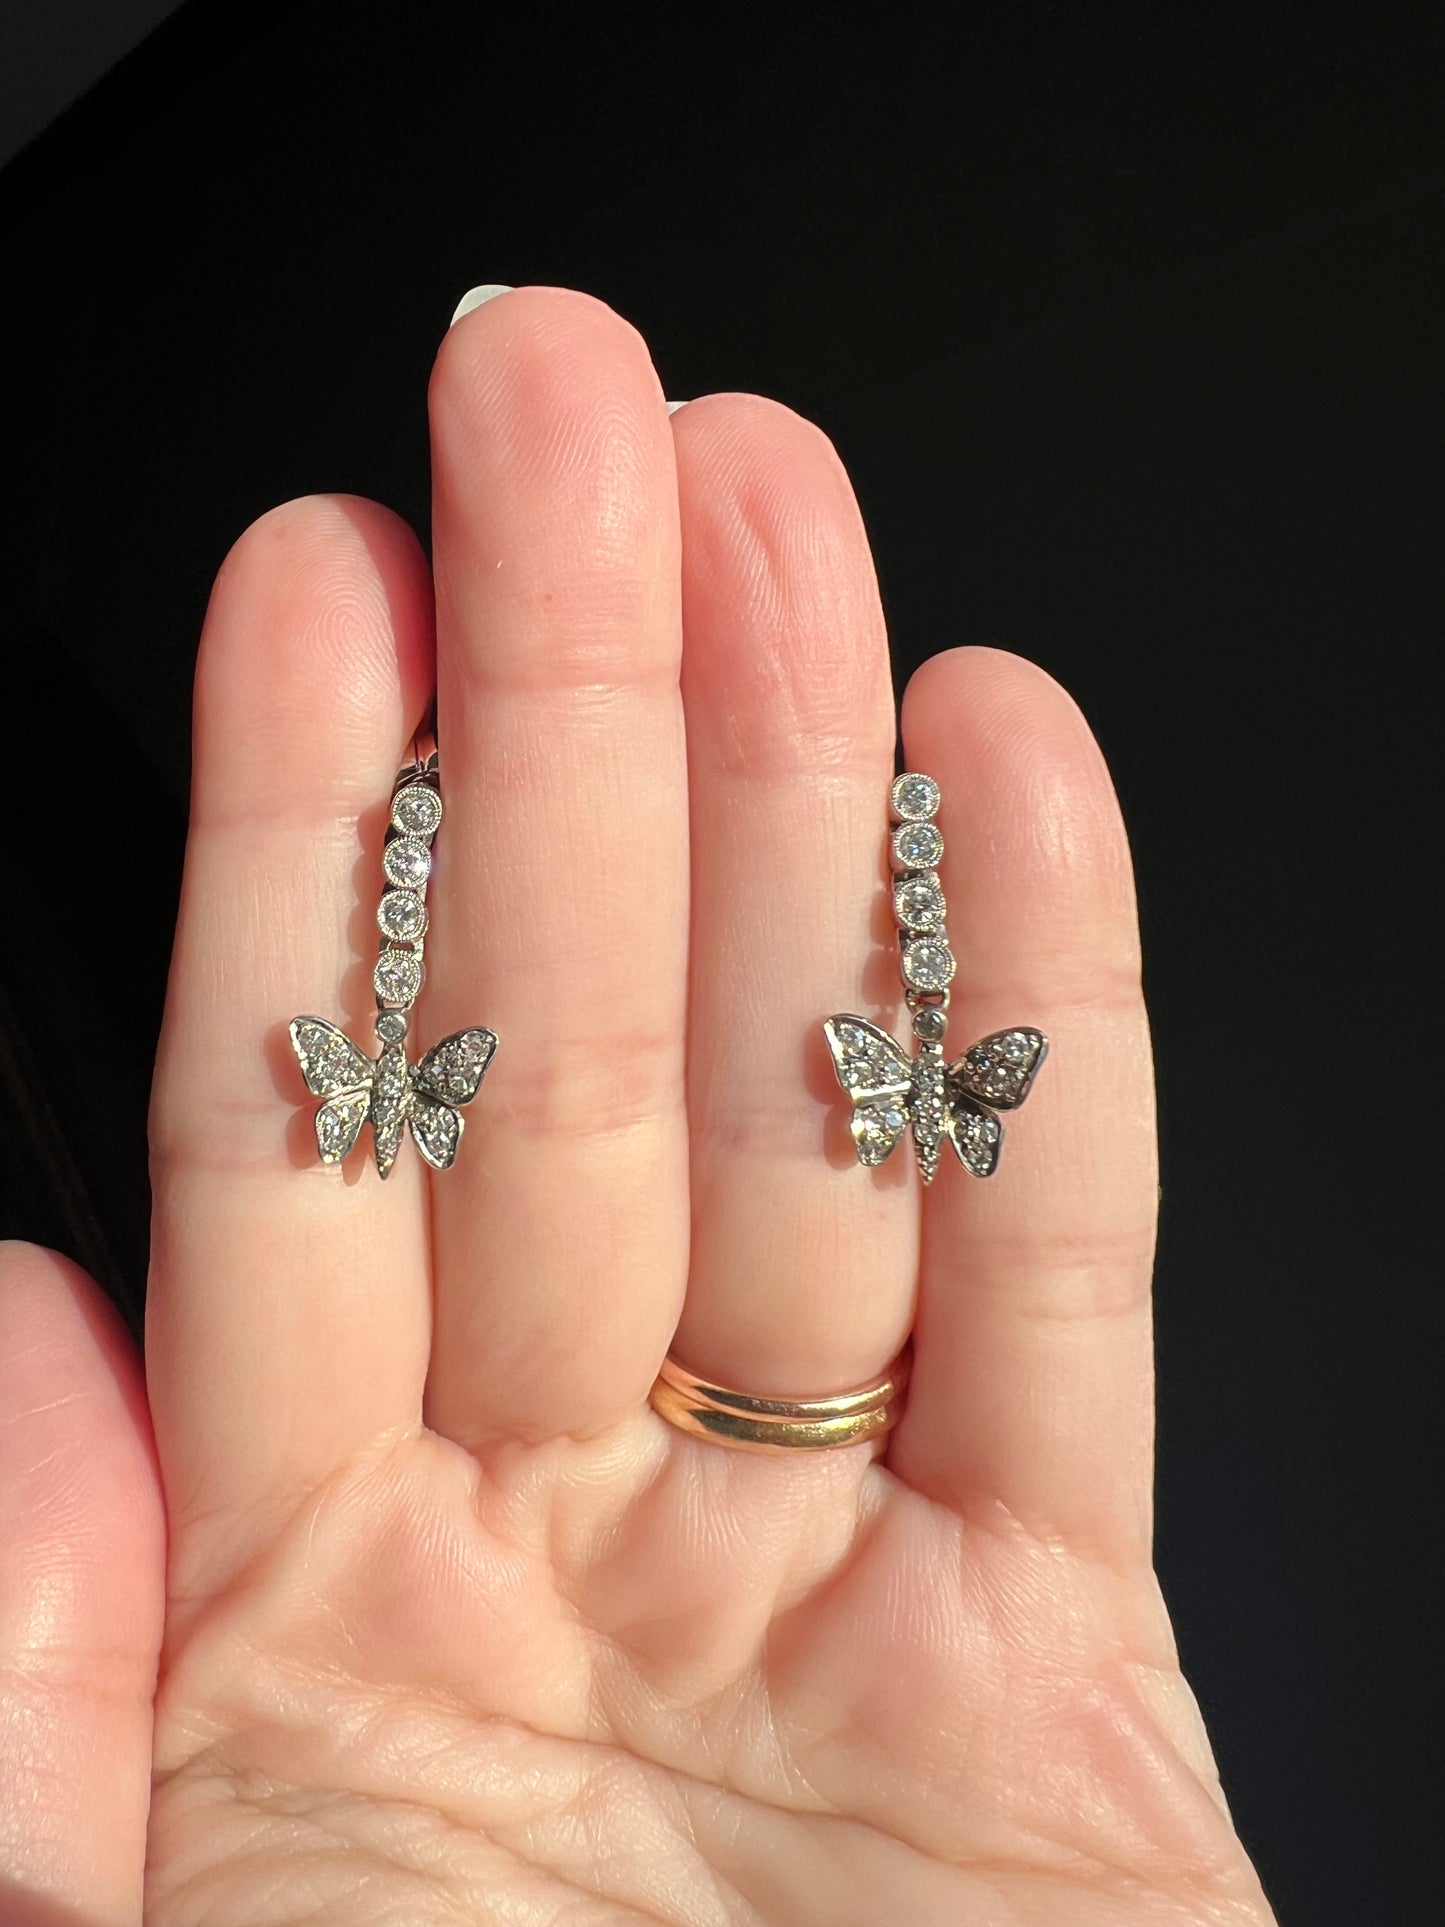 BUTTERFLIES .7 Carat Diamond Vintage Dangle Drop Earrings 14k White Gold Figural Butterfly Sparkle